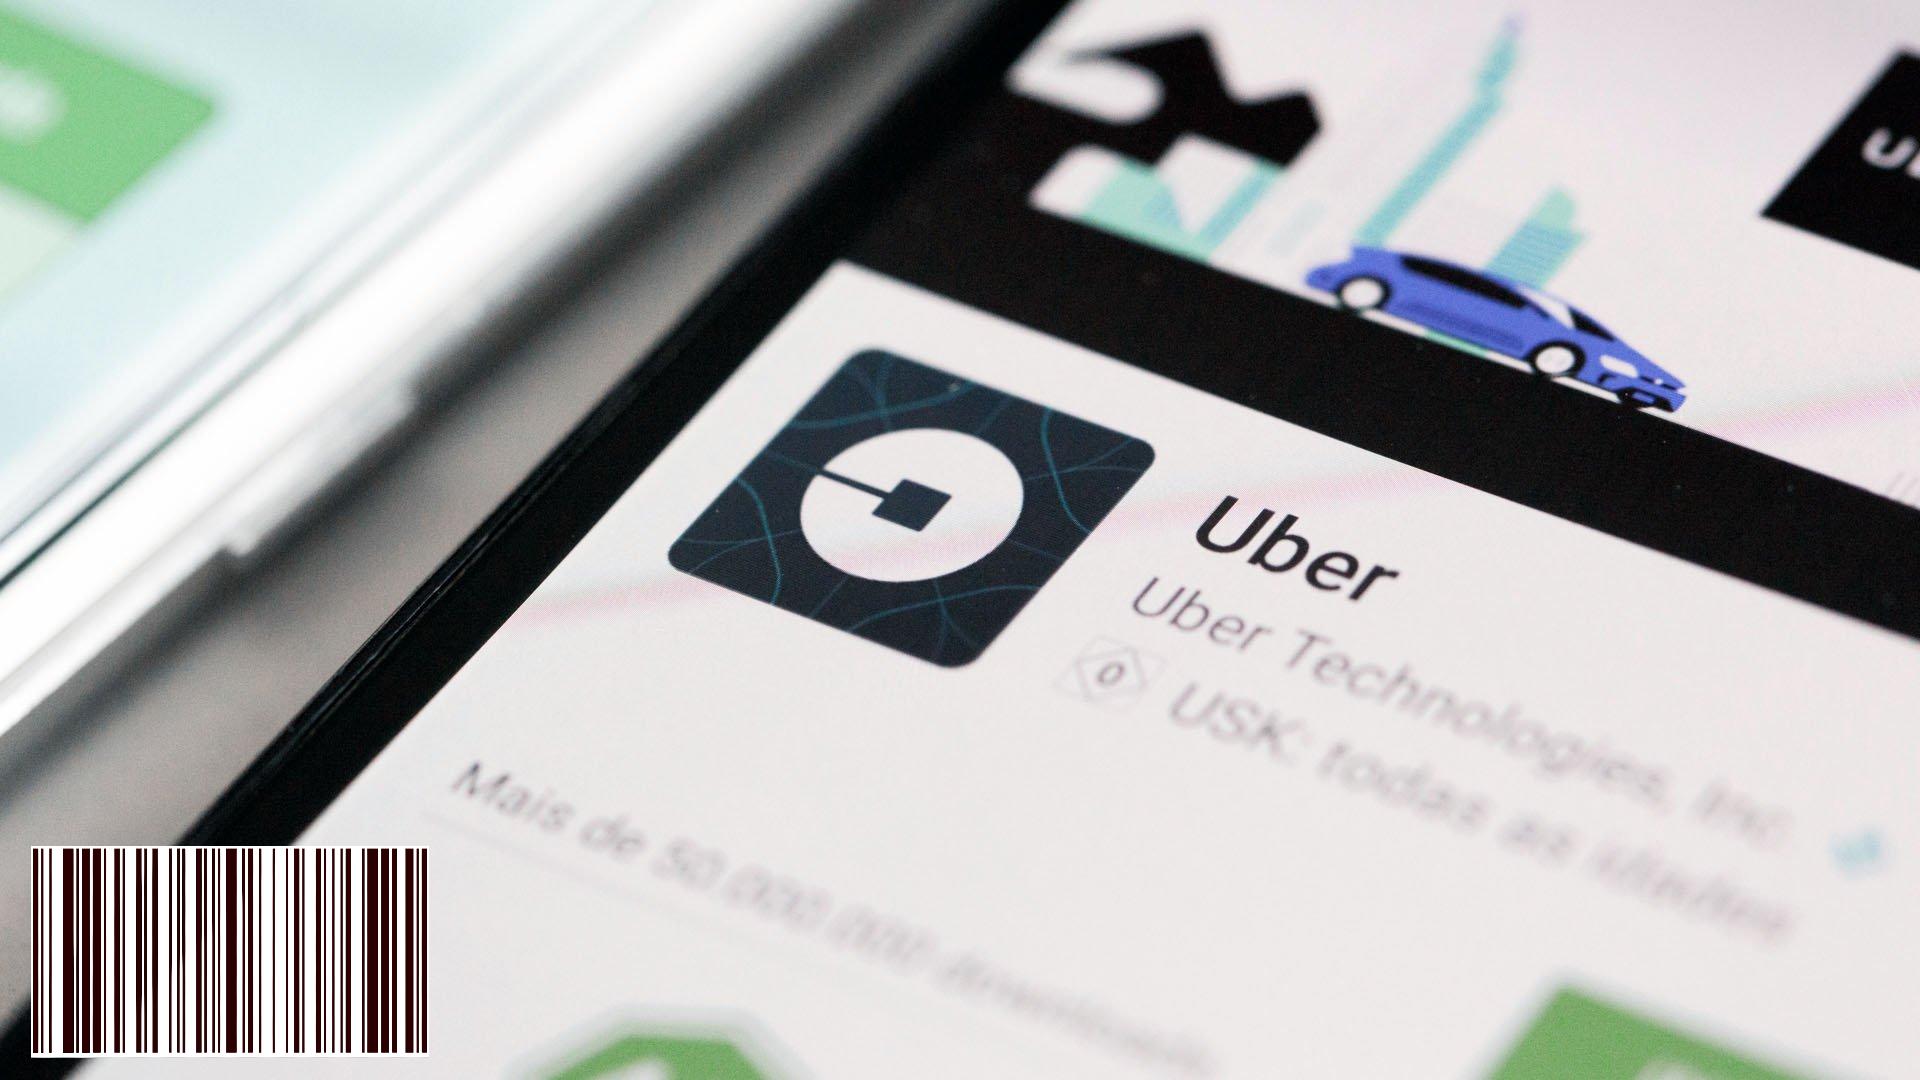 بعد تنظيم Uber ، يمكن لـ باولو دمج الخدمة في وسائل النقل العام في المدينة